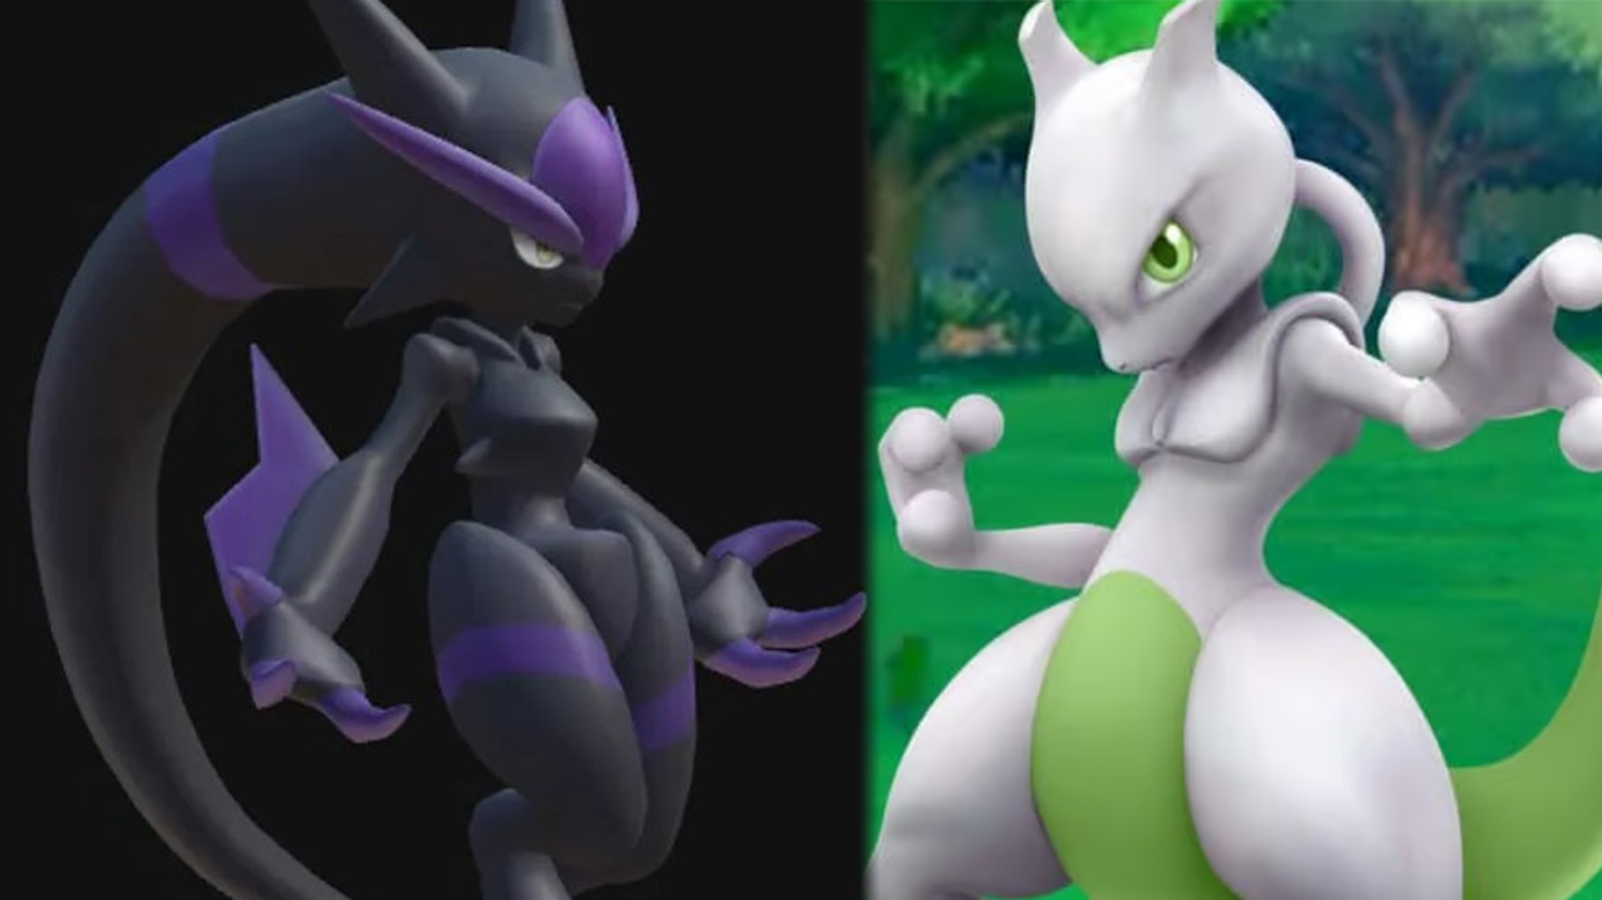 Datamine do Palworld revela Pal que se parece com Mewtwo enquanto a saga de imitação de Pokémon continua